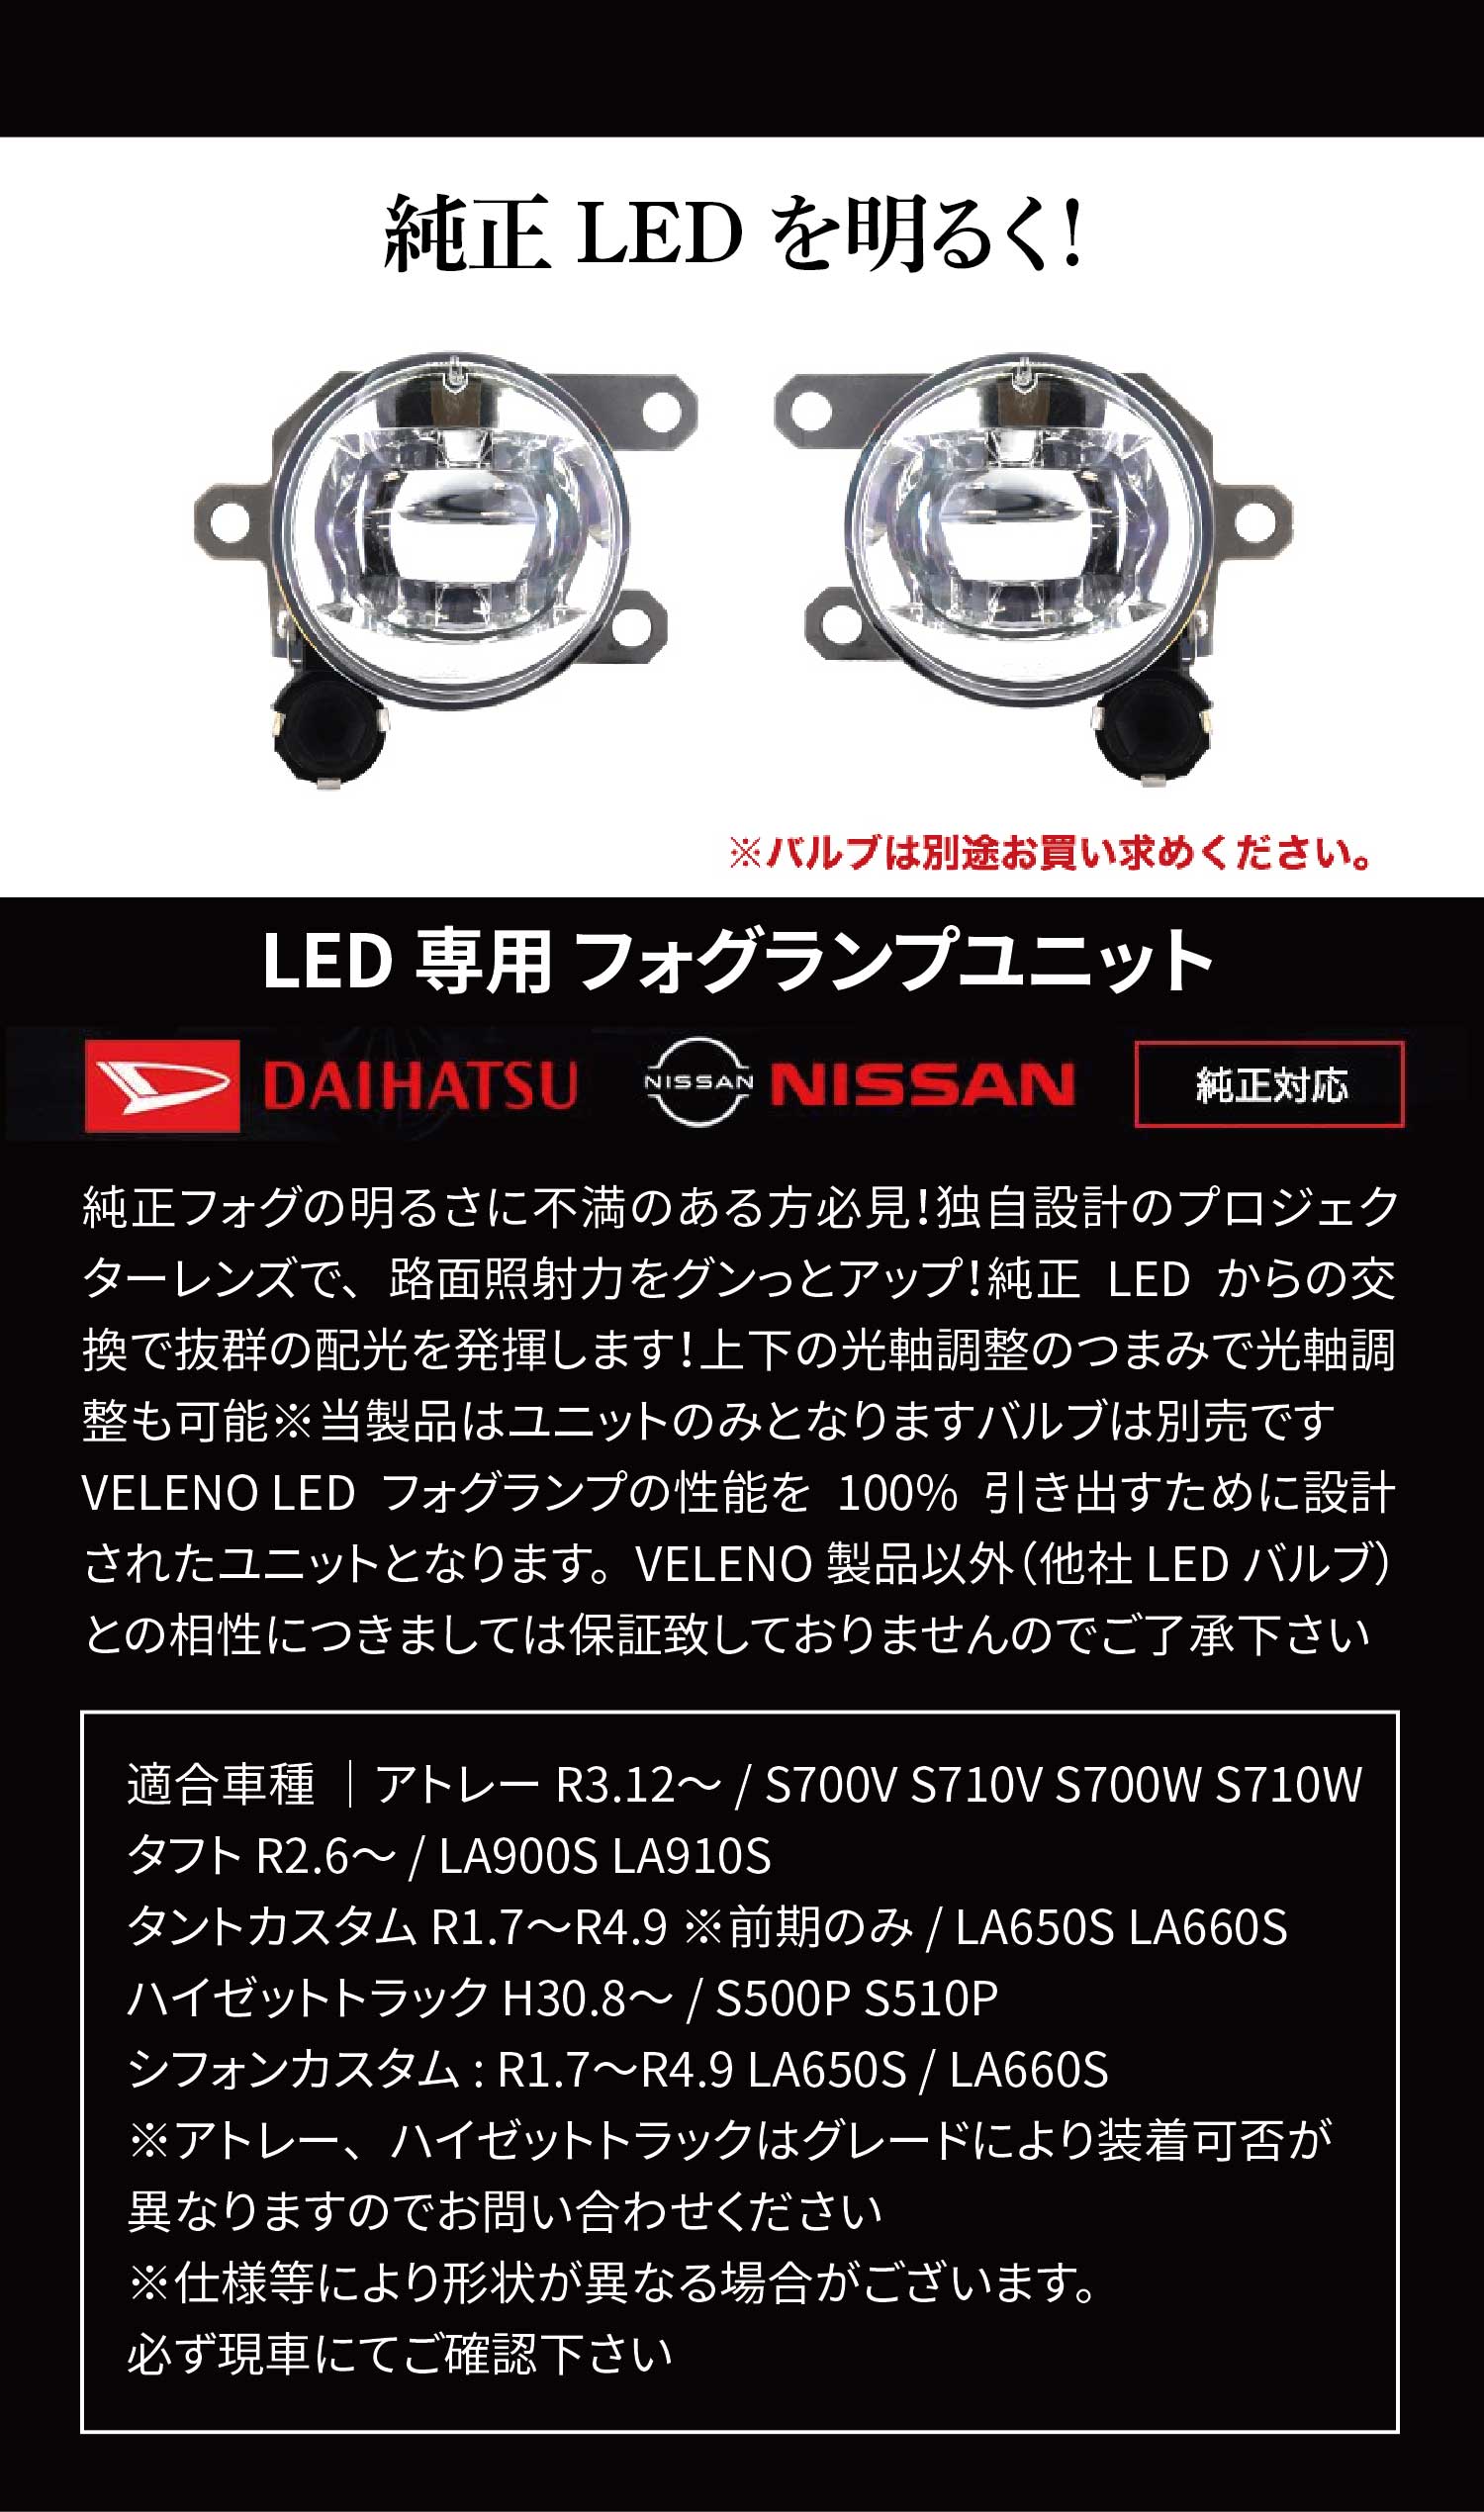 LEDフォグランプユニット ダイハツ / 日産 / 三菱 純正LED対応 (L1B